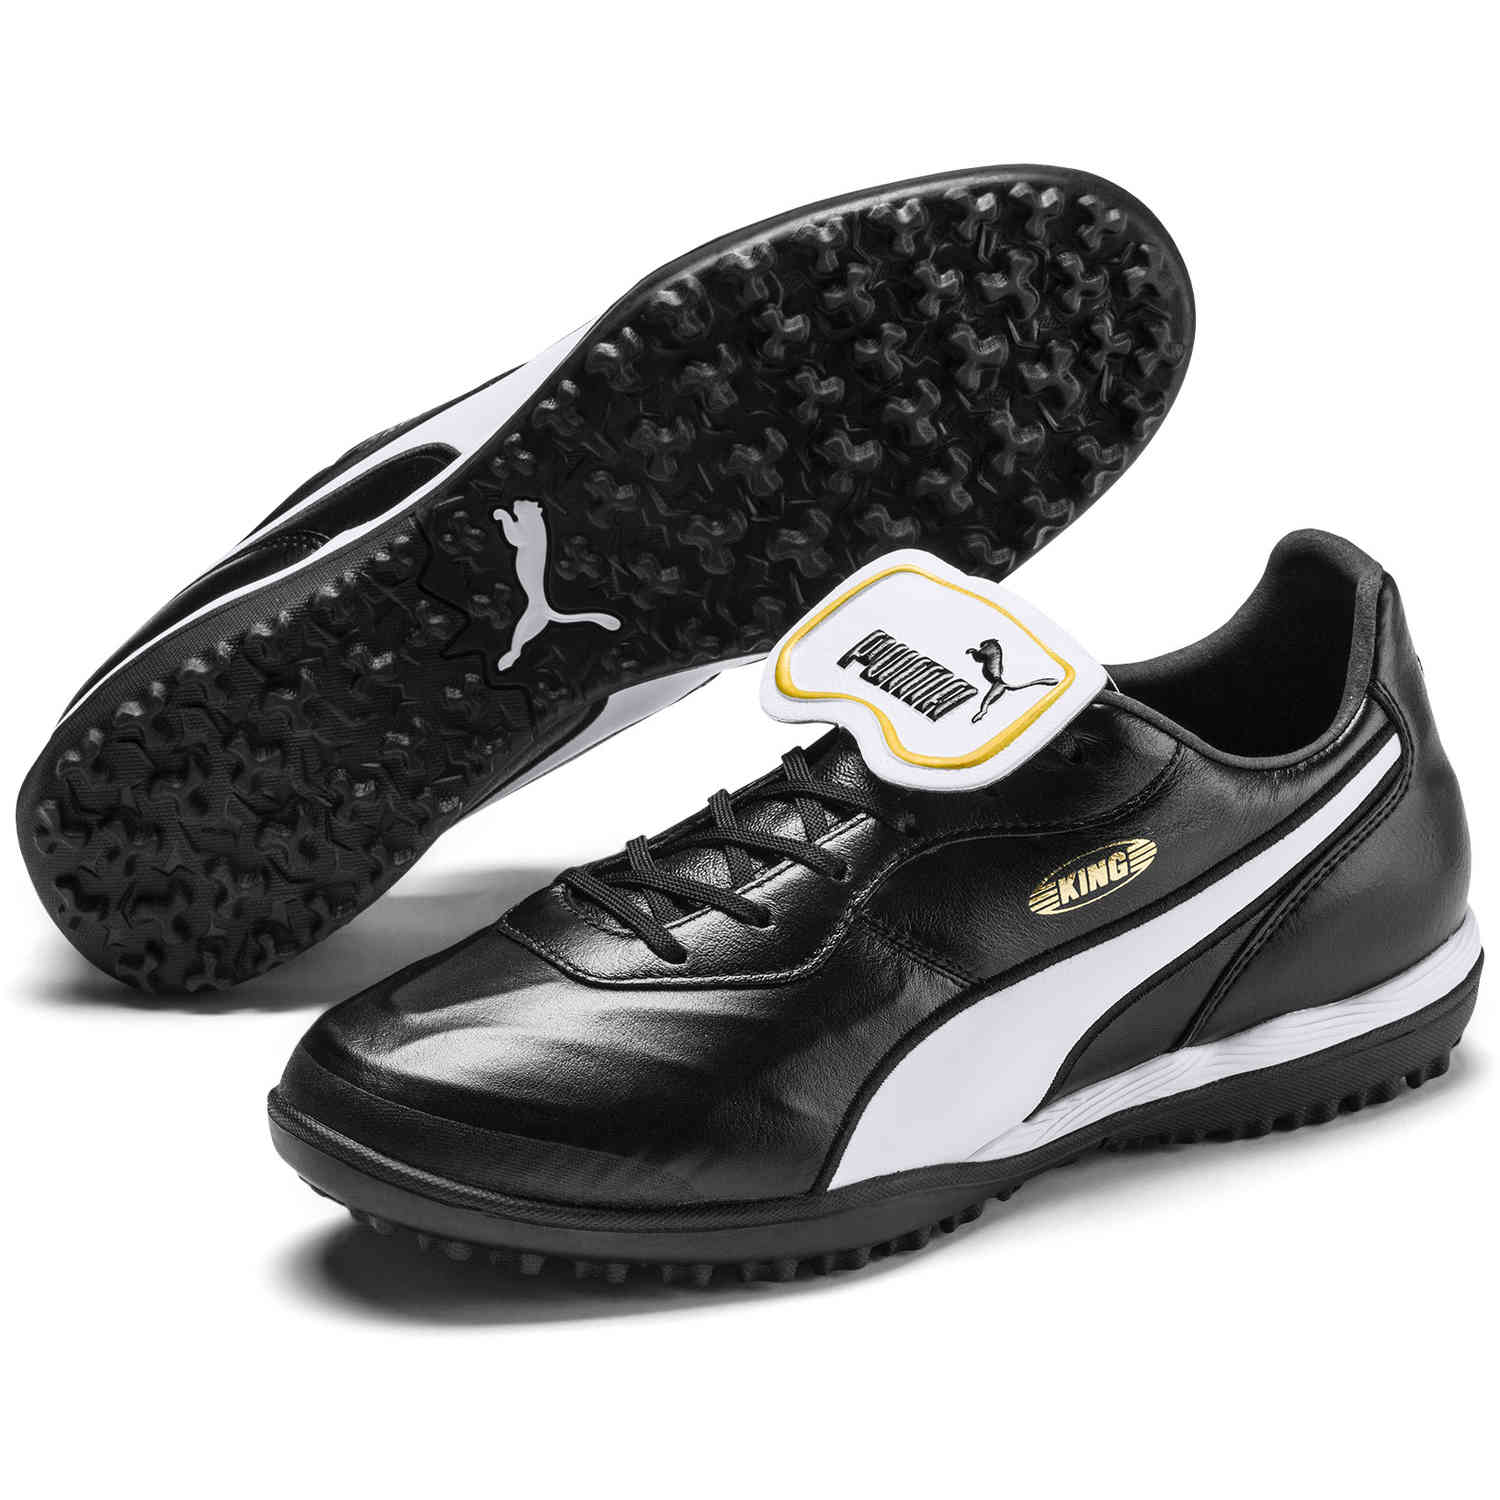 puma turf soccer shoes on sale